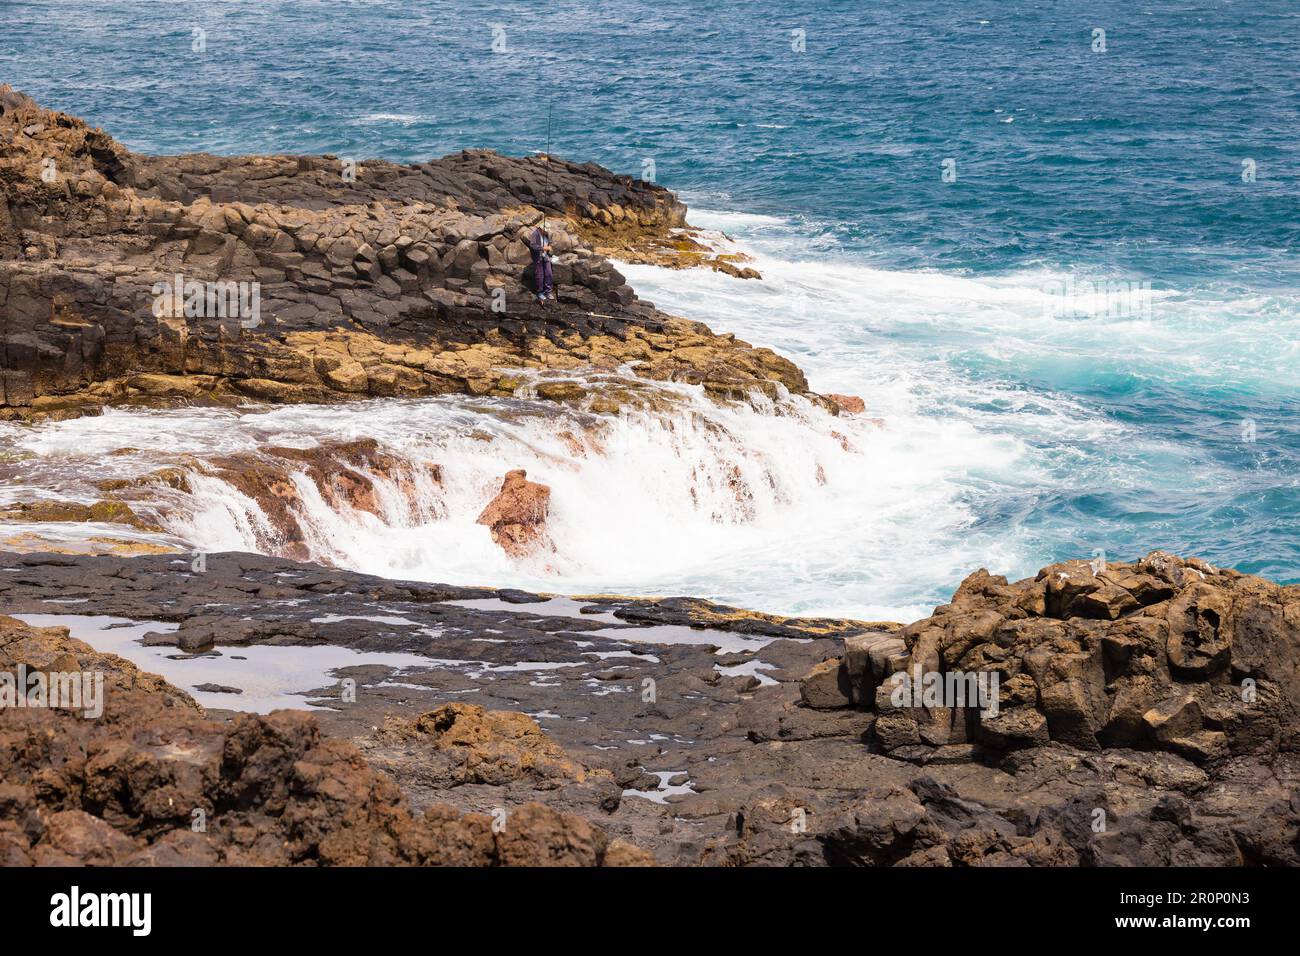 Rocks and surf at the Mirador el Bufadero de La Garita, Las Palmas, Gran Canaria, Spain Stock Photo